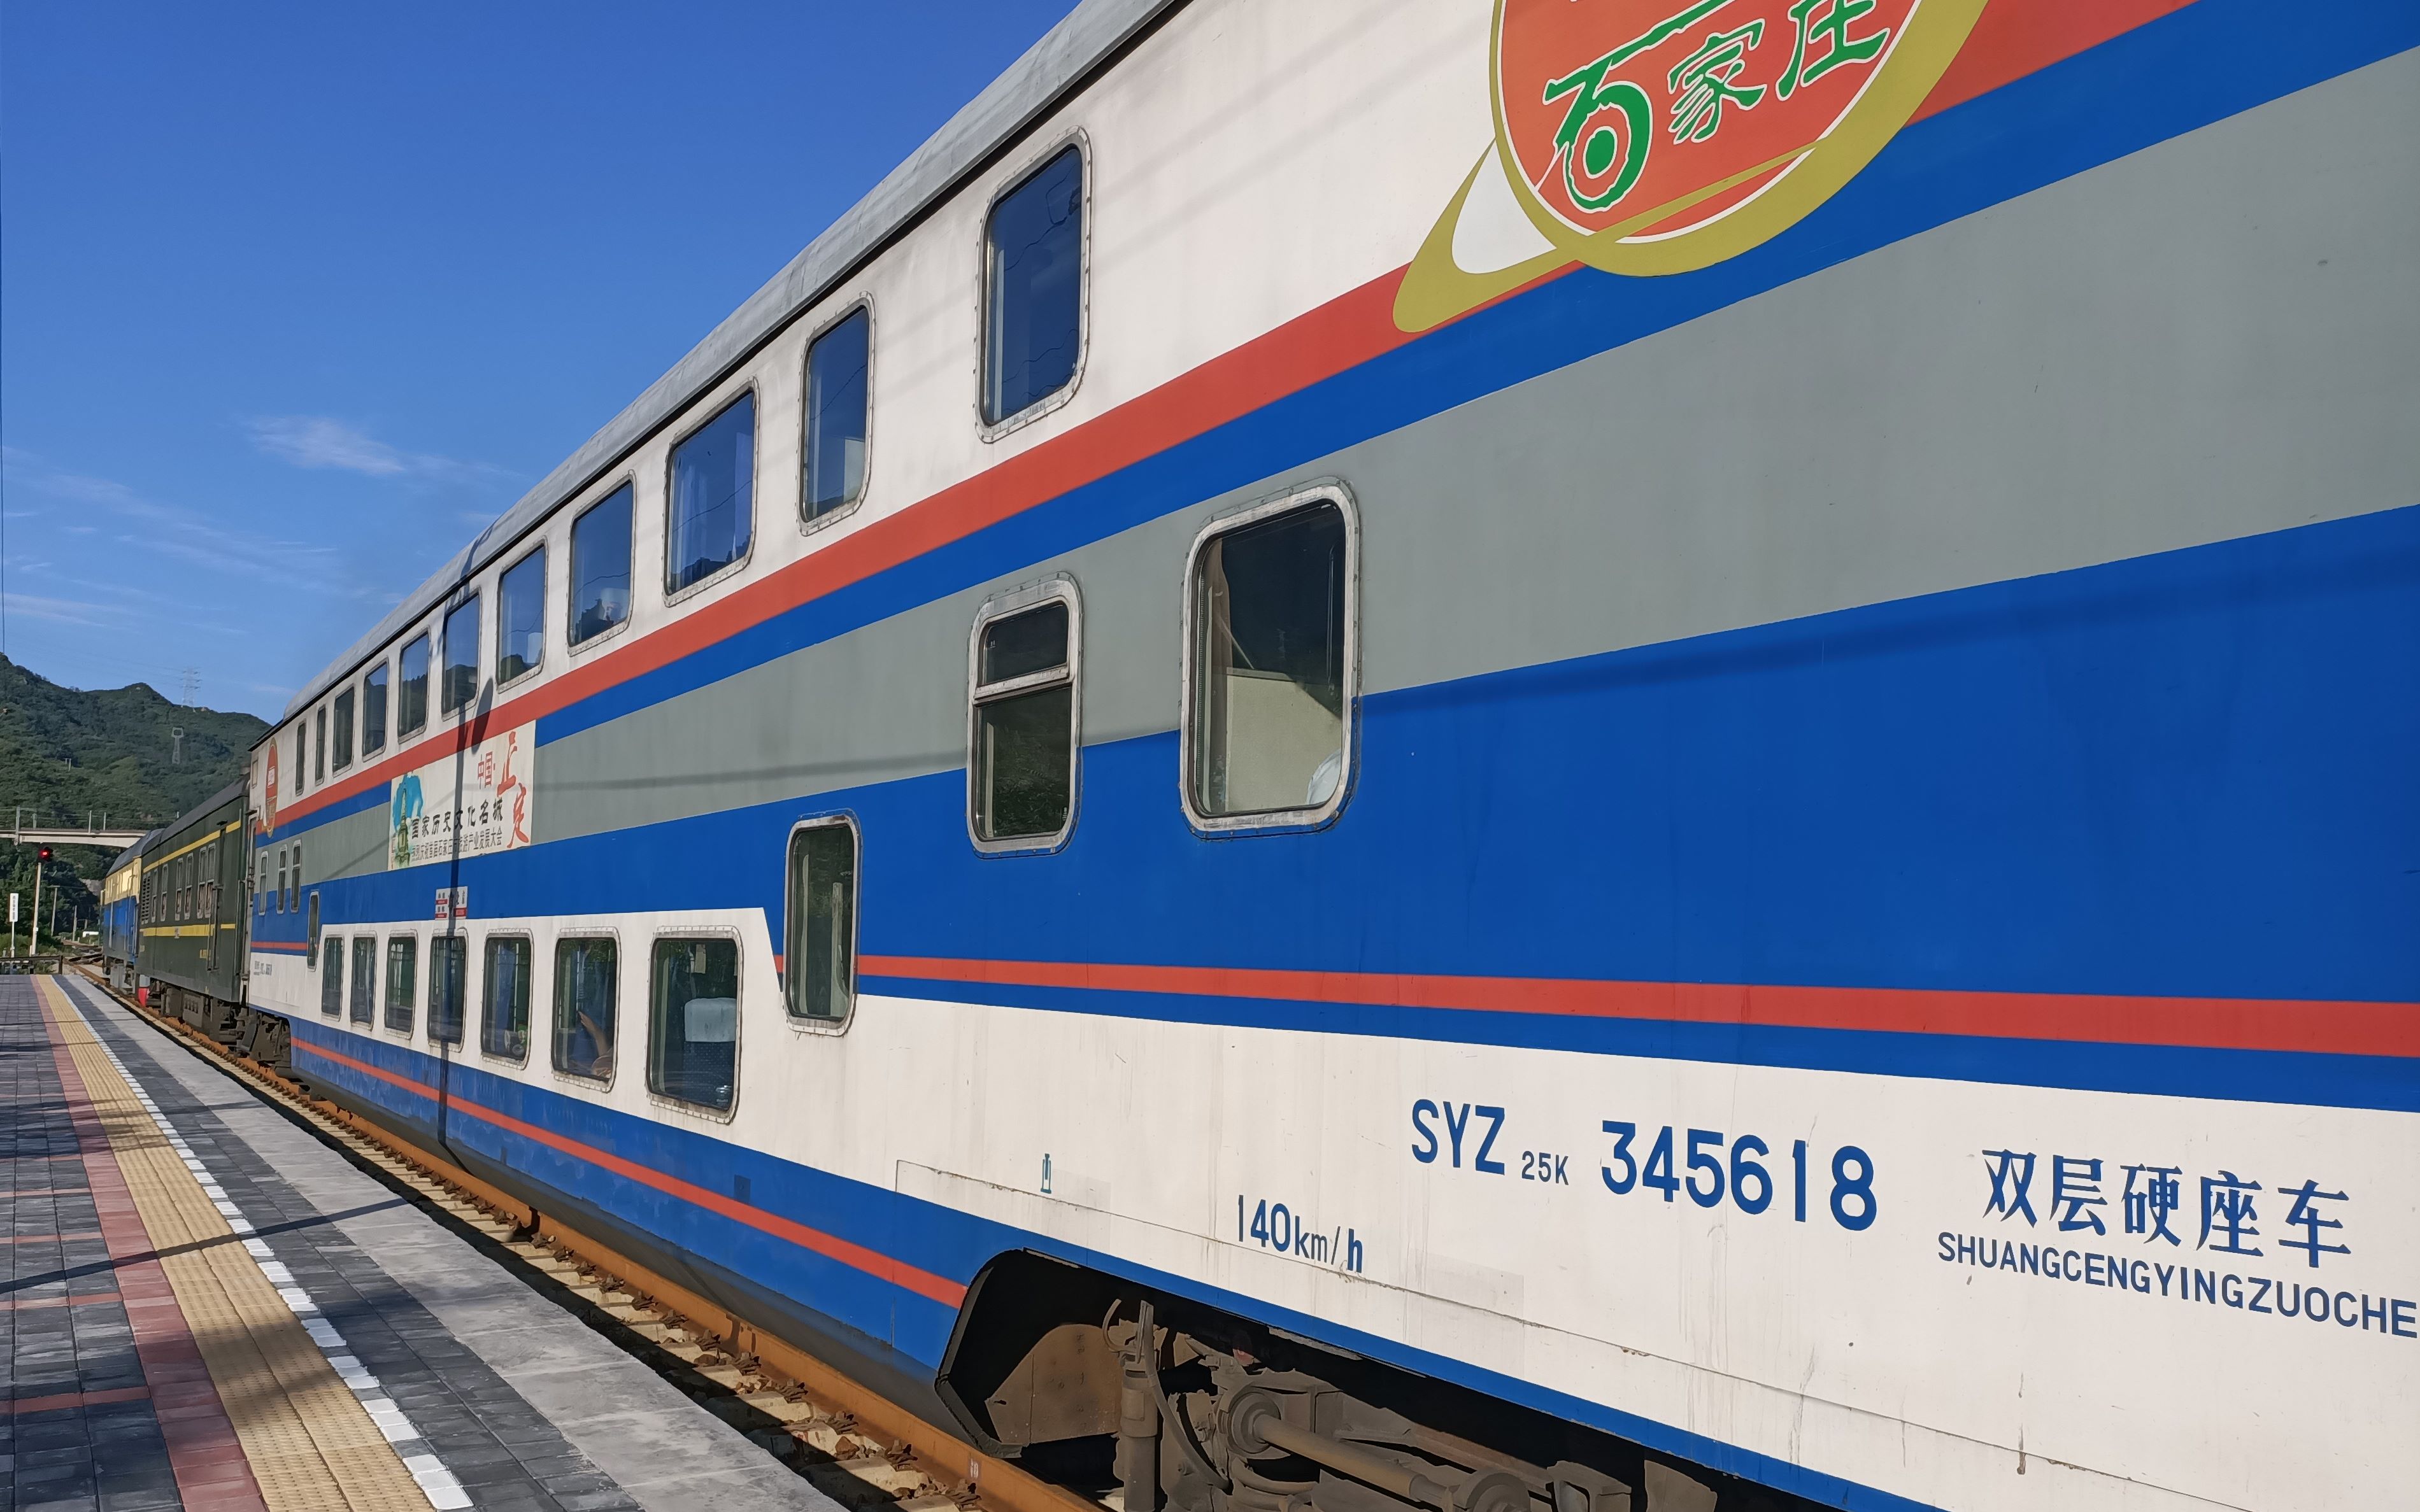 京局原色双层列车y512次运转体验